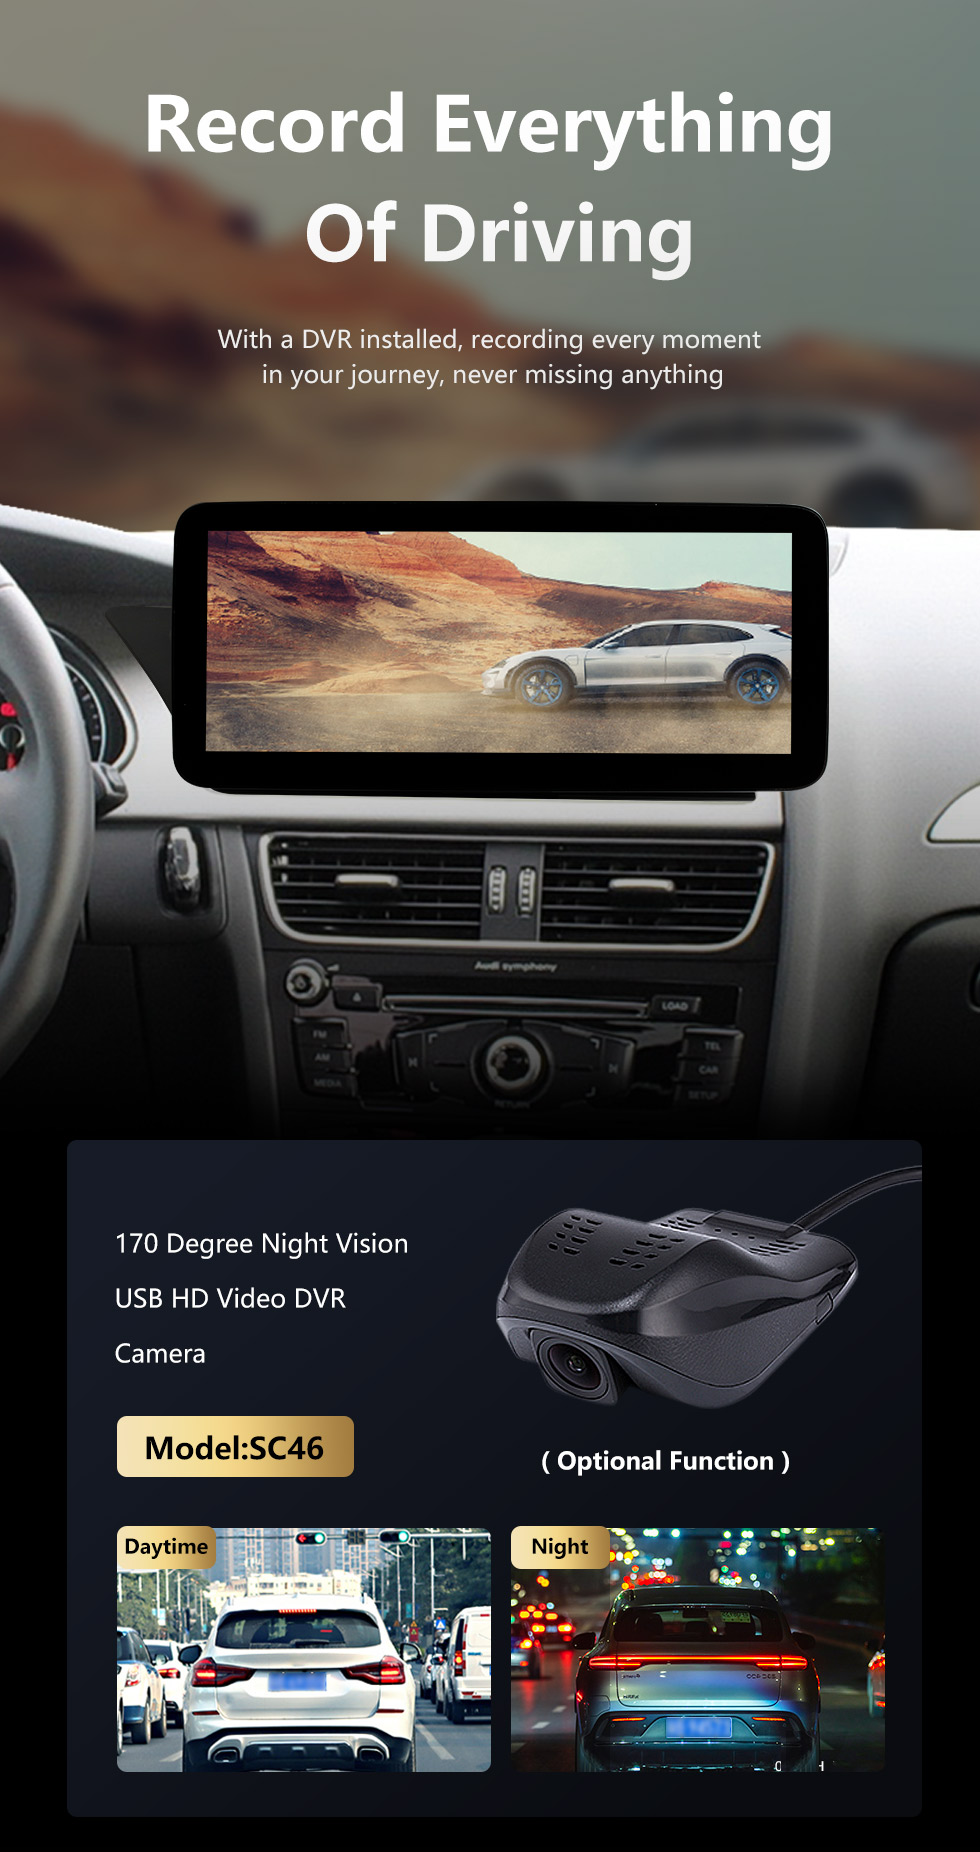 Seicane Écran tactile HD 12,3 pouces Android 11.0 Radio de navigation GPS pour 2008-2017 2018 2019 Audi A4 A5 S4 S5 A4L B8 avec prise en charge Bluetooth AUX DVR Carplay OBD Commande au volant